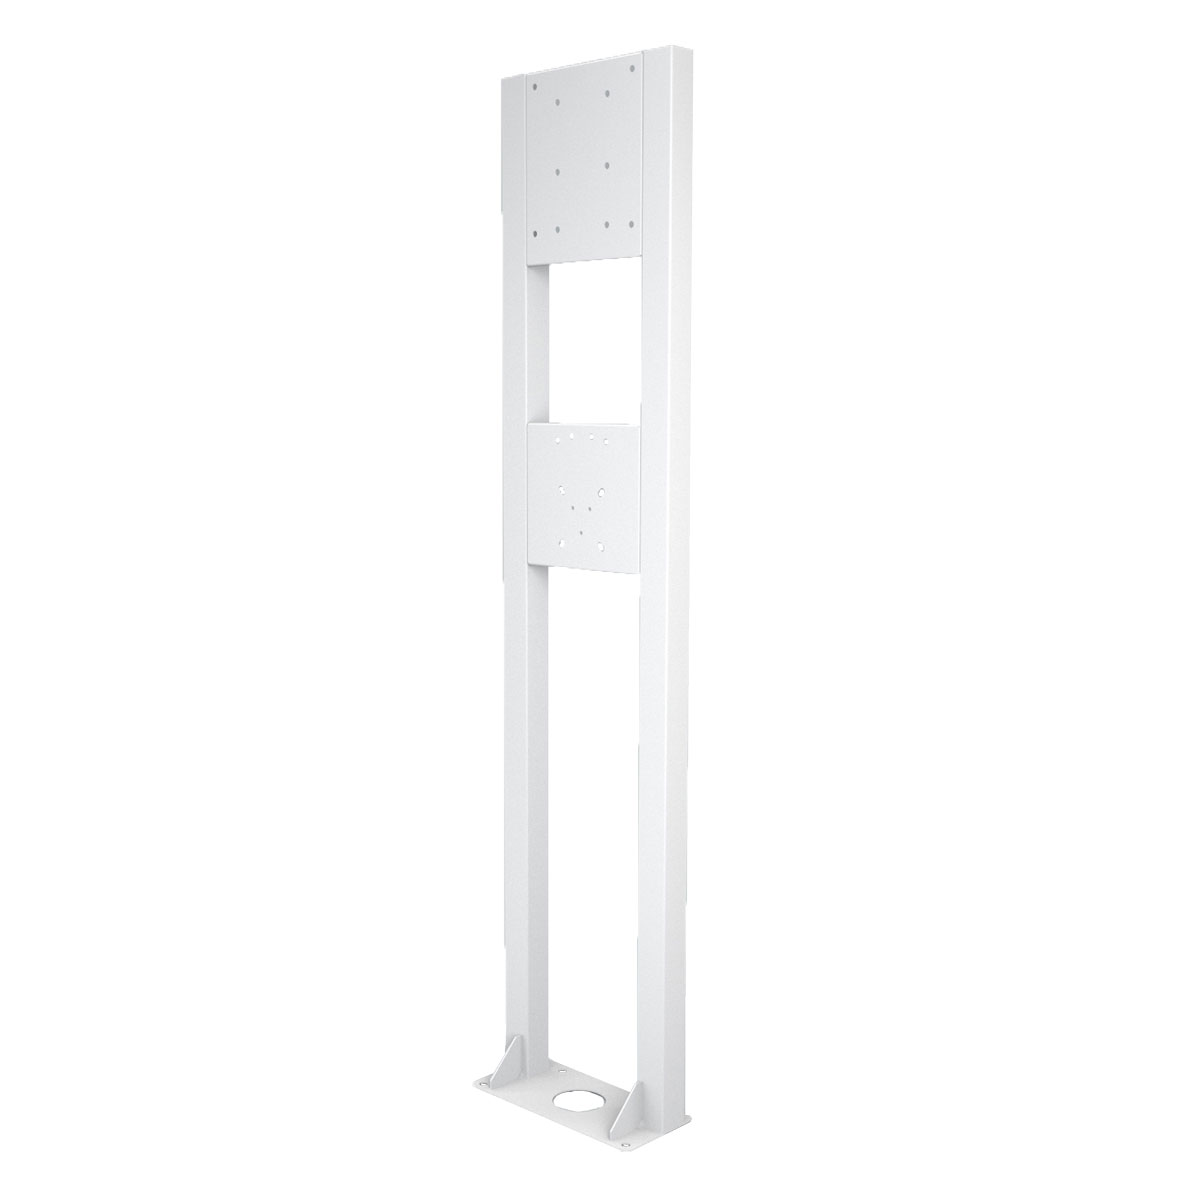 a-TroniX Standsäule für Wallbox Ladestationen aus Edelstahl in weiß Lochmaße 6mm